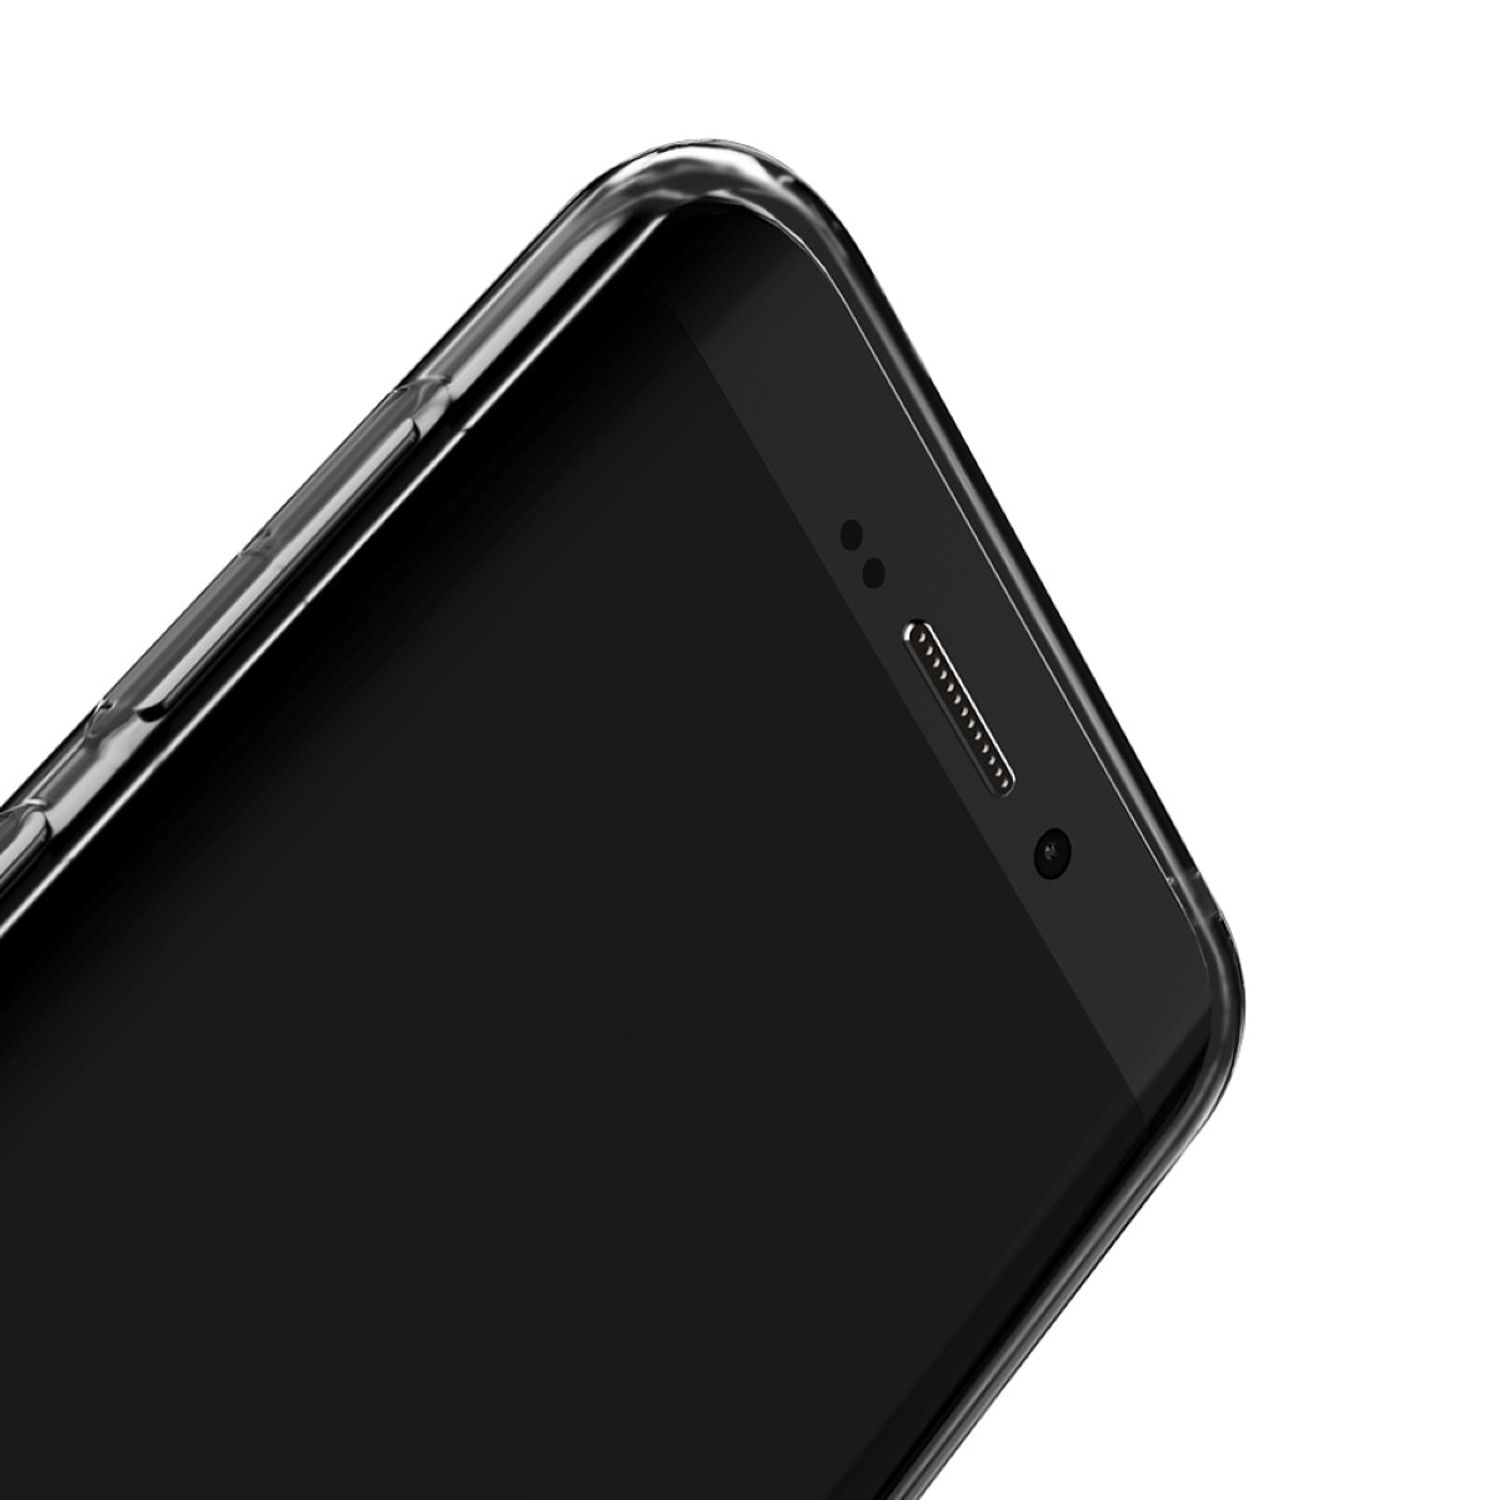 KÖNIG DESIGN Handyhülle Ultra Samsung, Transparent S8, Galaxy Backcover, Dünn Bumper